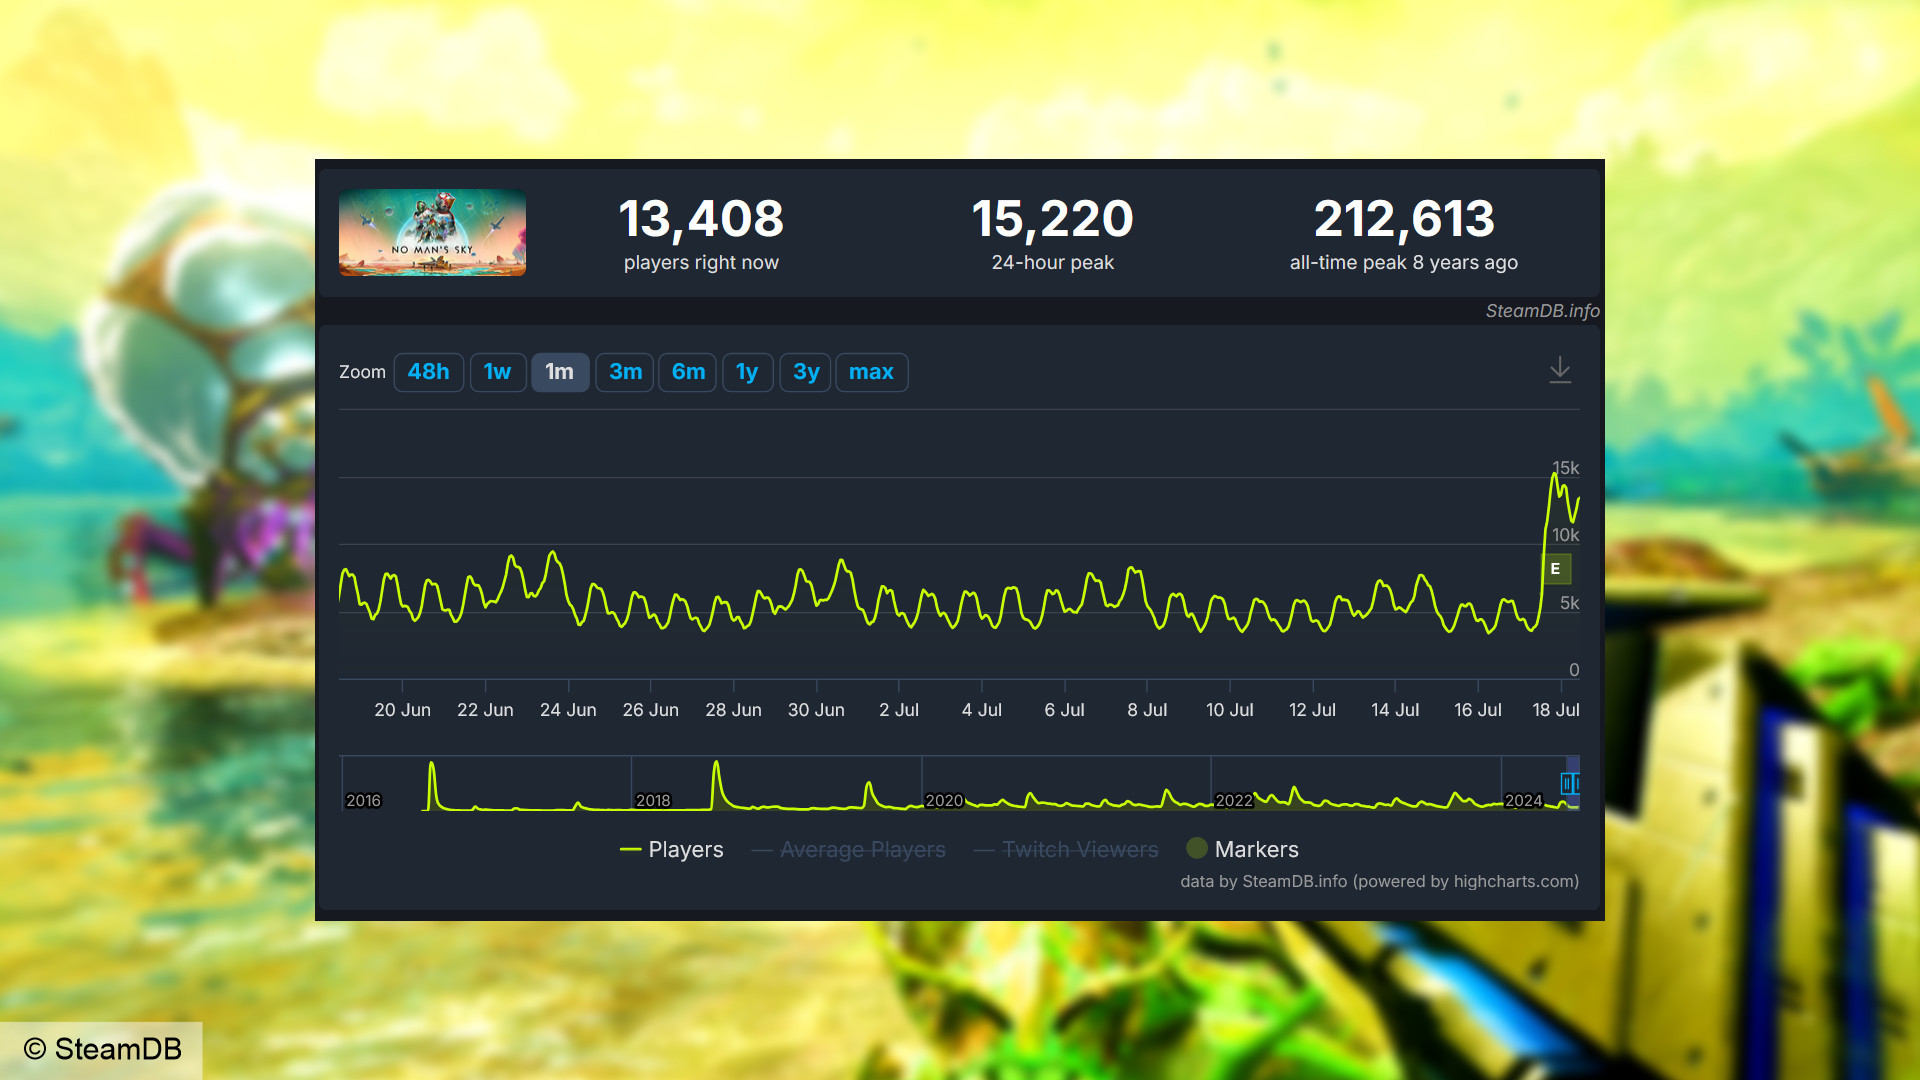 No Man's Sky Worlds oyuncu sayısı - SteamDB'den alınan grafik, 24 saatlik zirvede 15.220 oyuncu olduğunu gösteriyor.